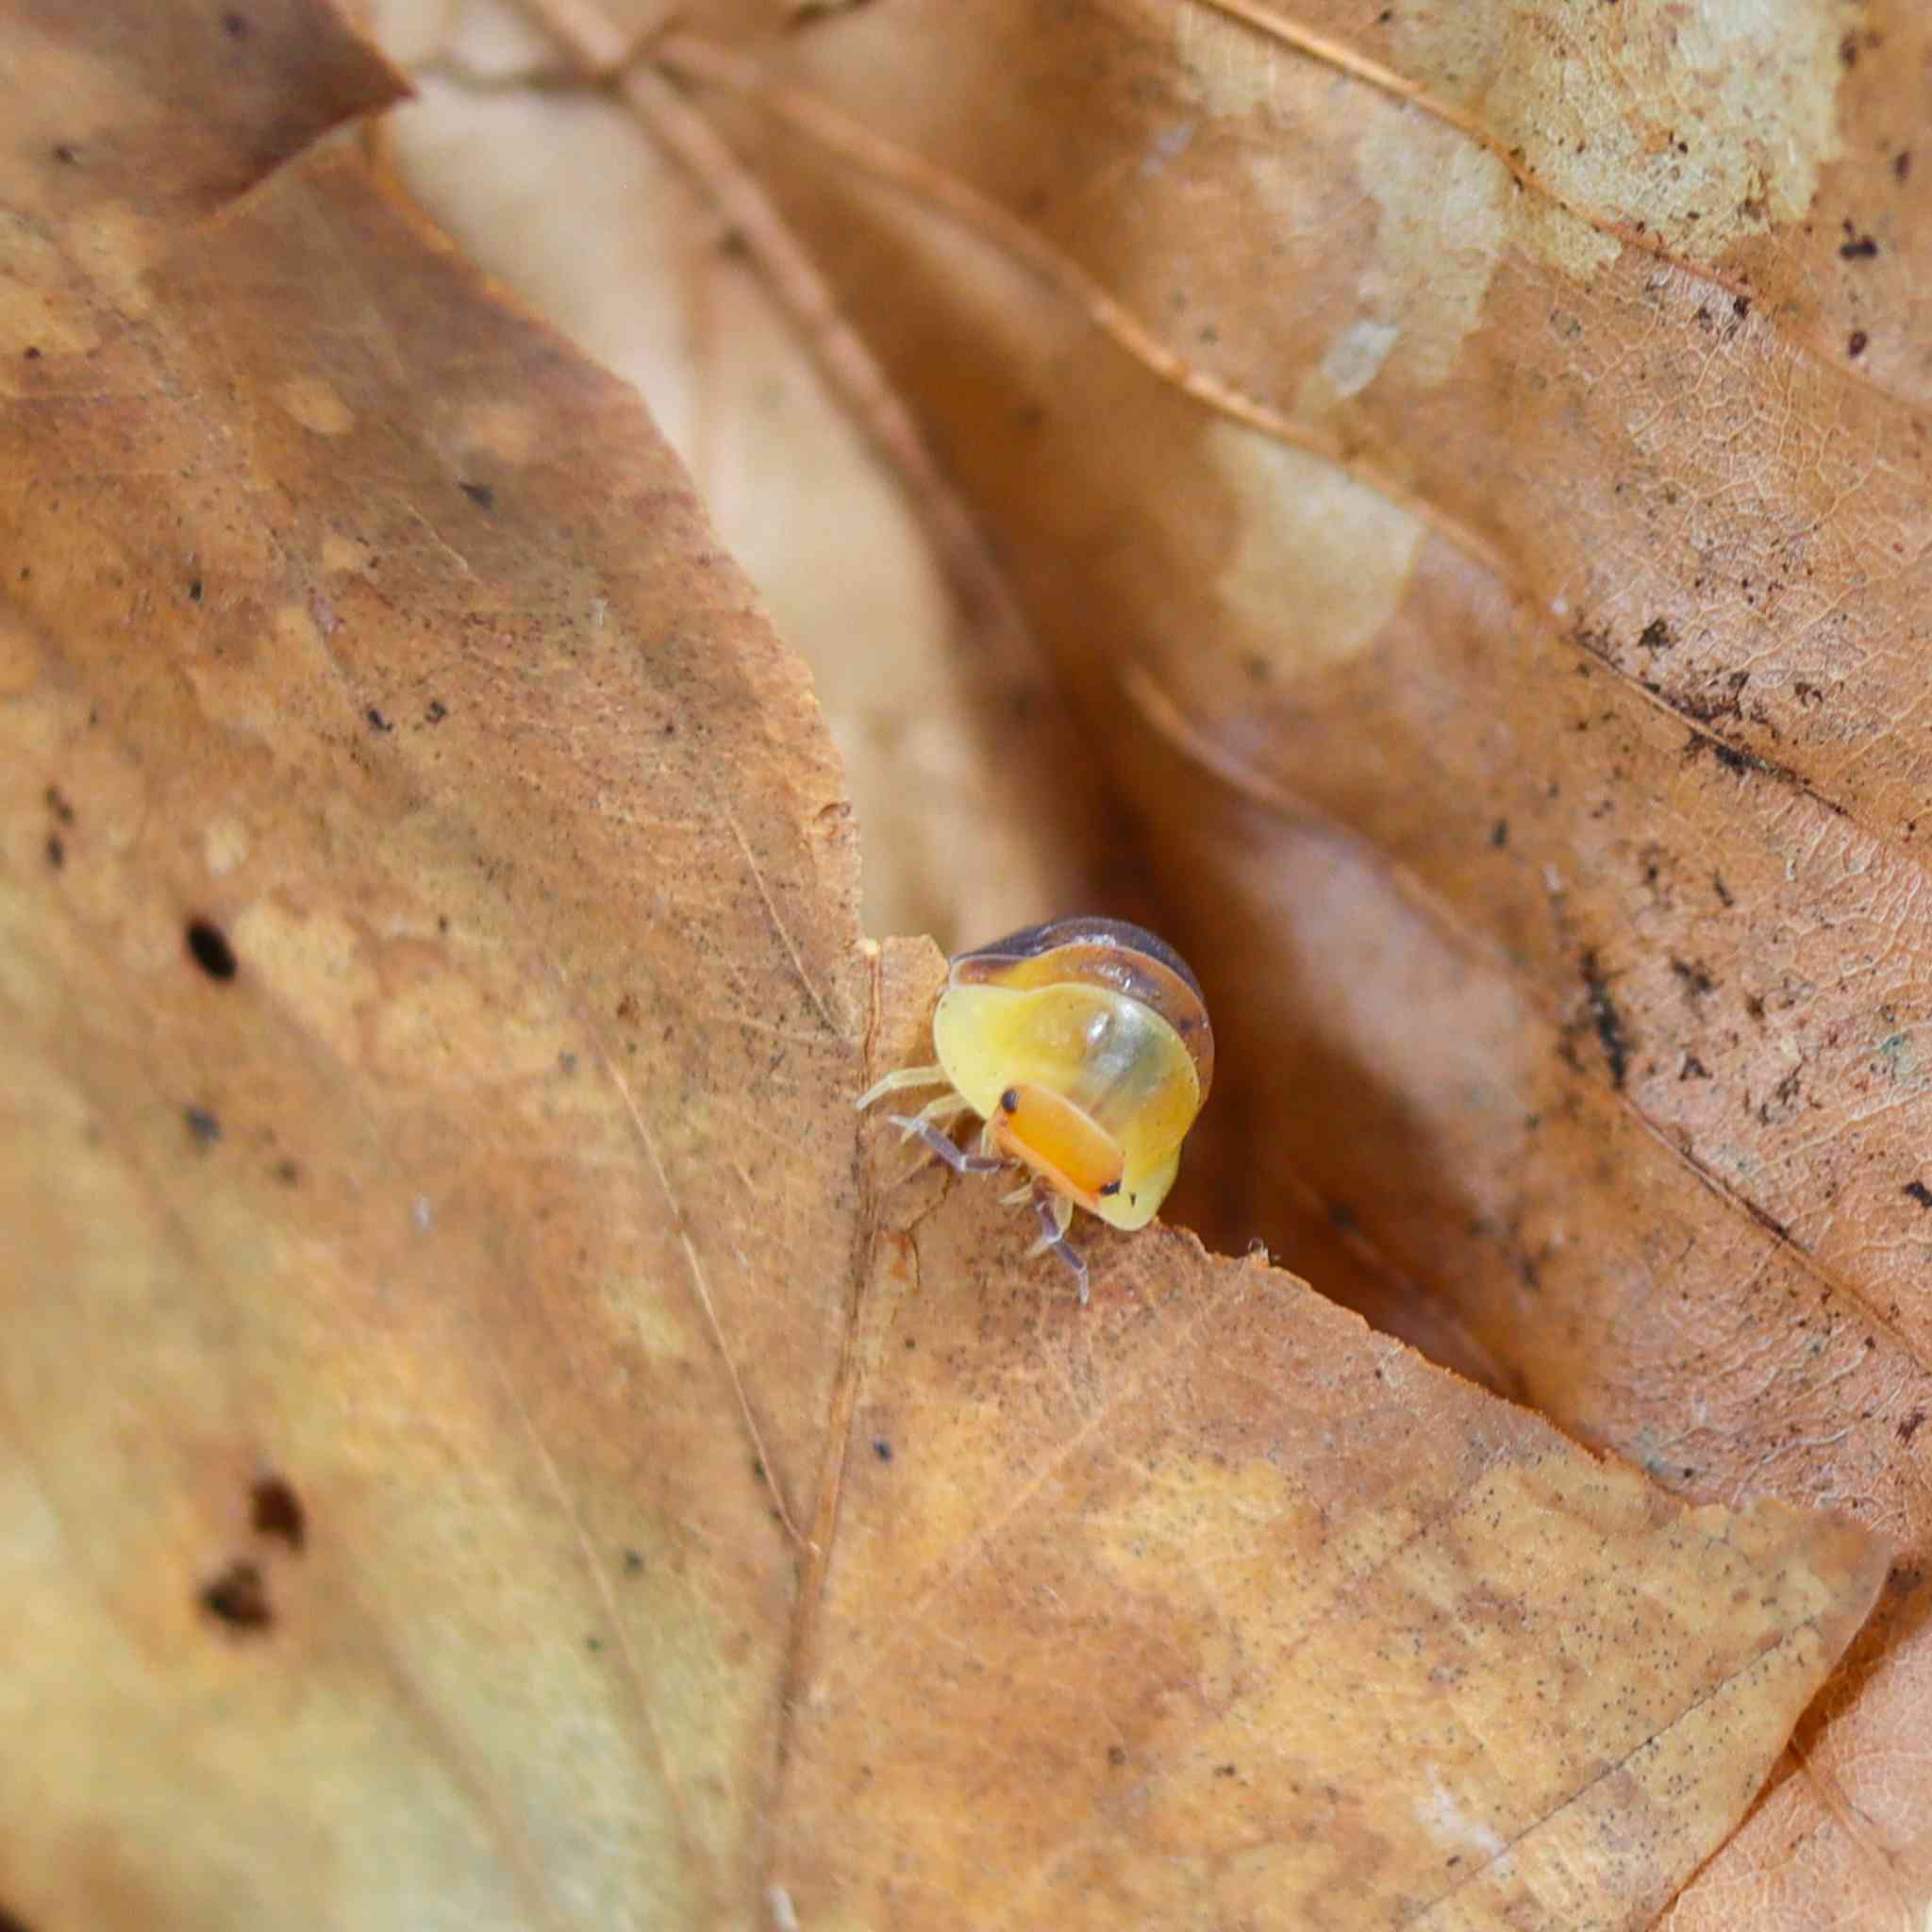 rubber ducky isopod on leaf litter